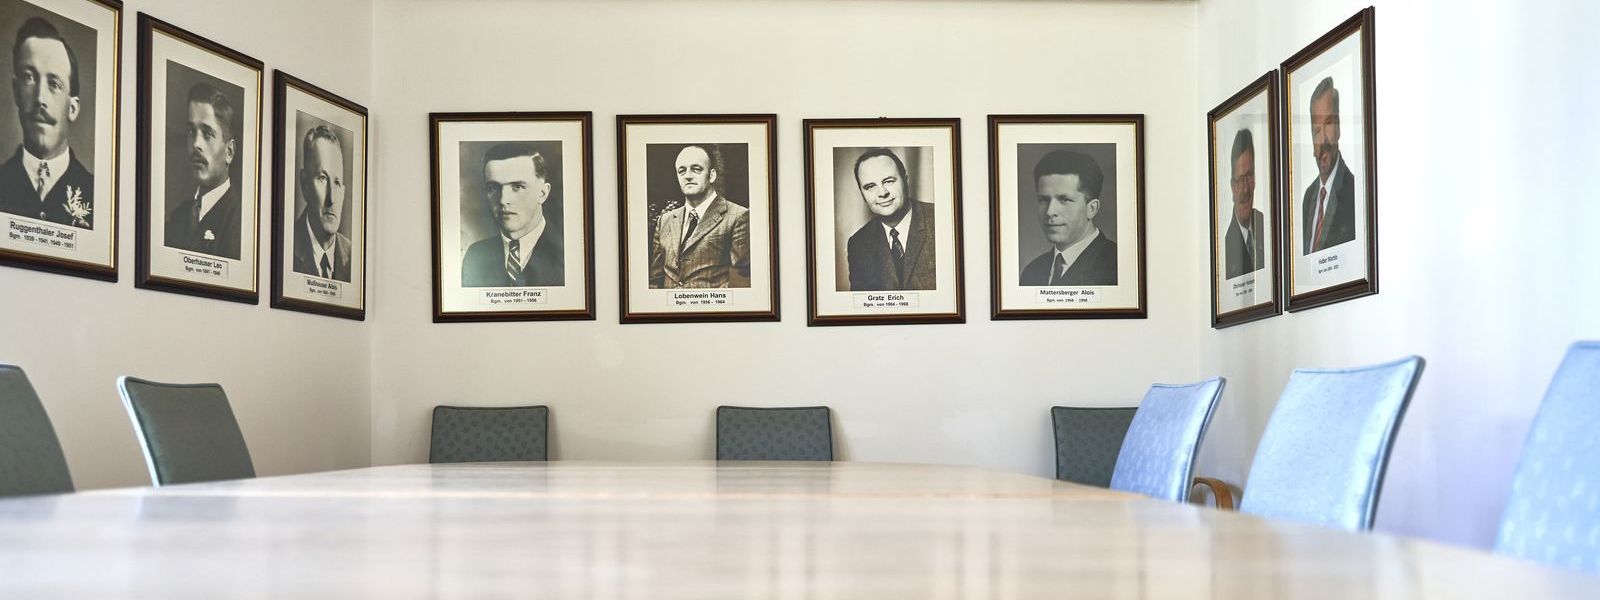 Sitzungszimmer. Großer Tisch mit Stühlen und Portraits der bisherigen Bürgermeister an der Wand